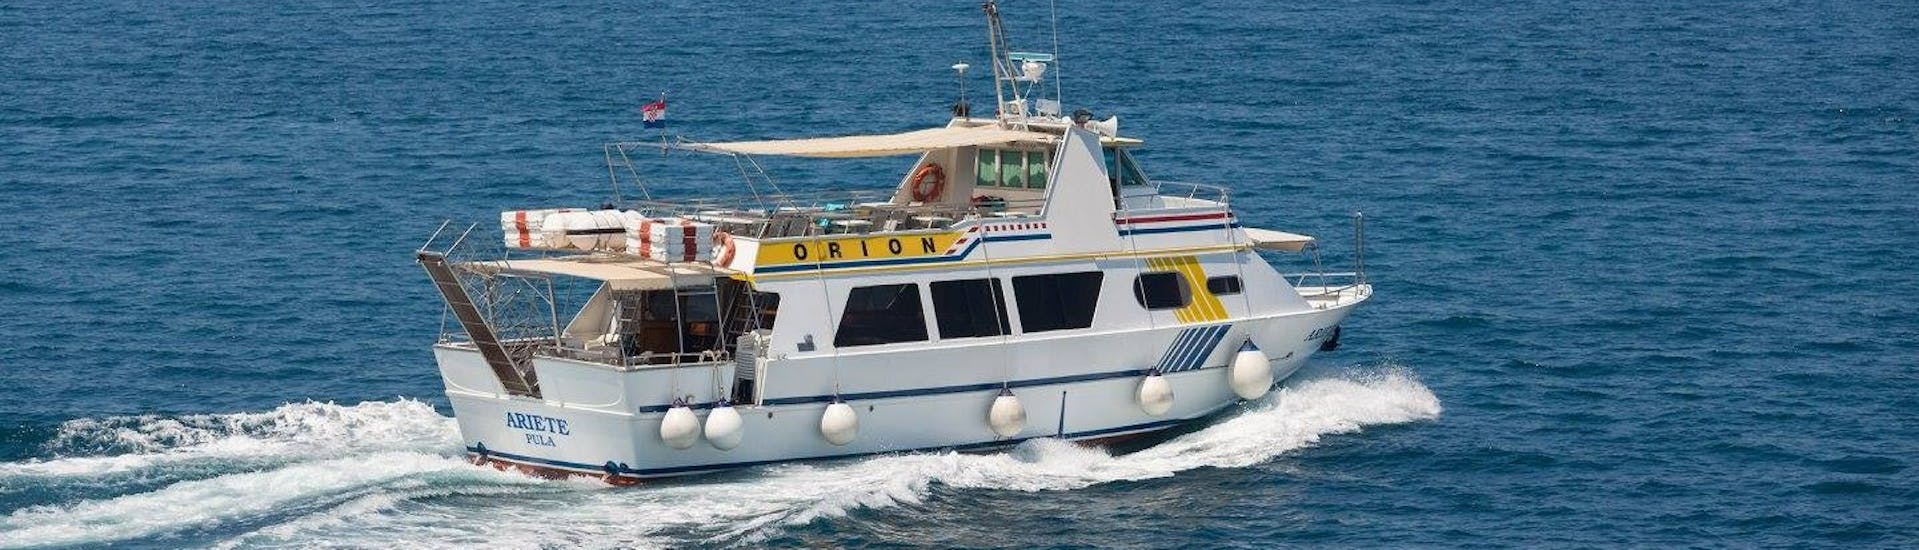 De boot van Orion Travel Pula op zee tijdens de Boottocht van Pula naar Rovinj.